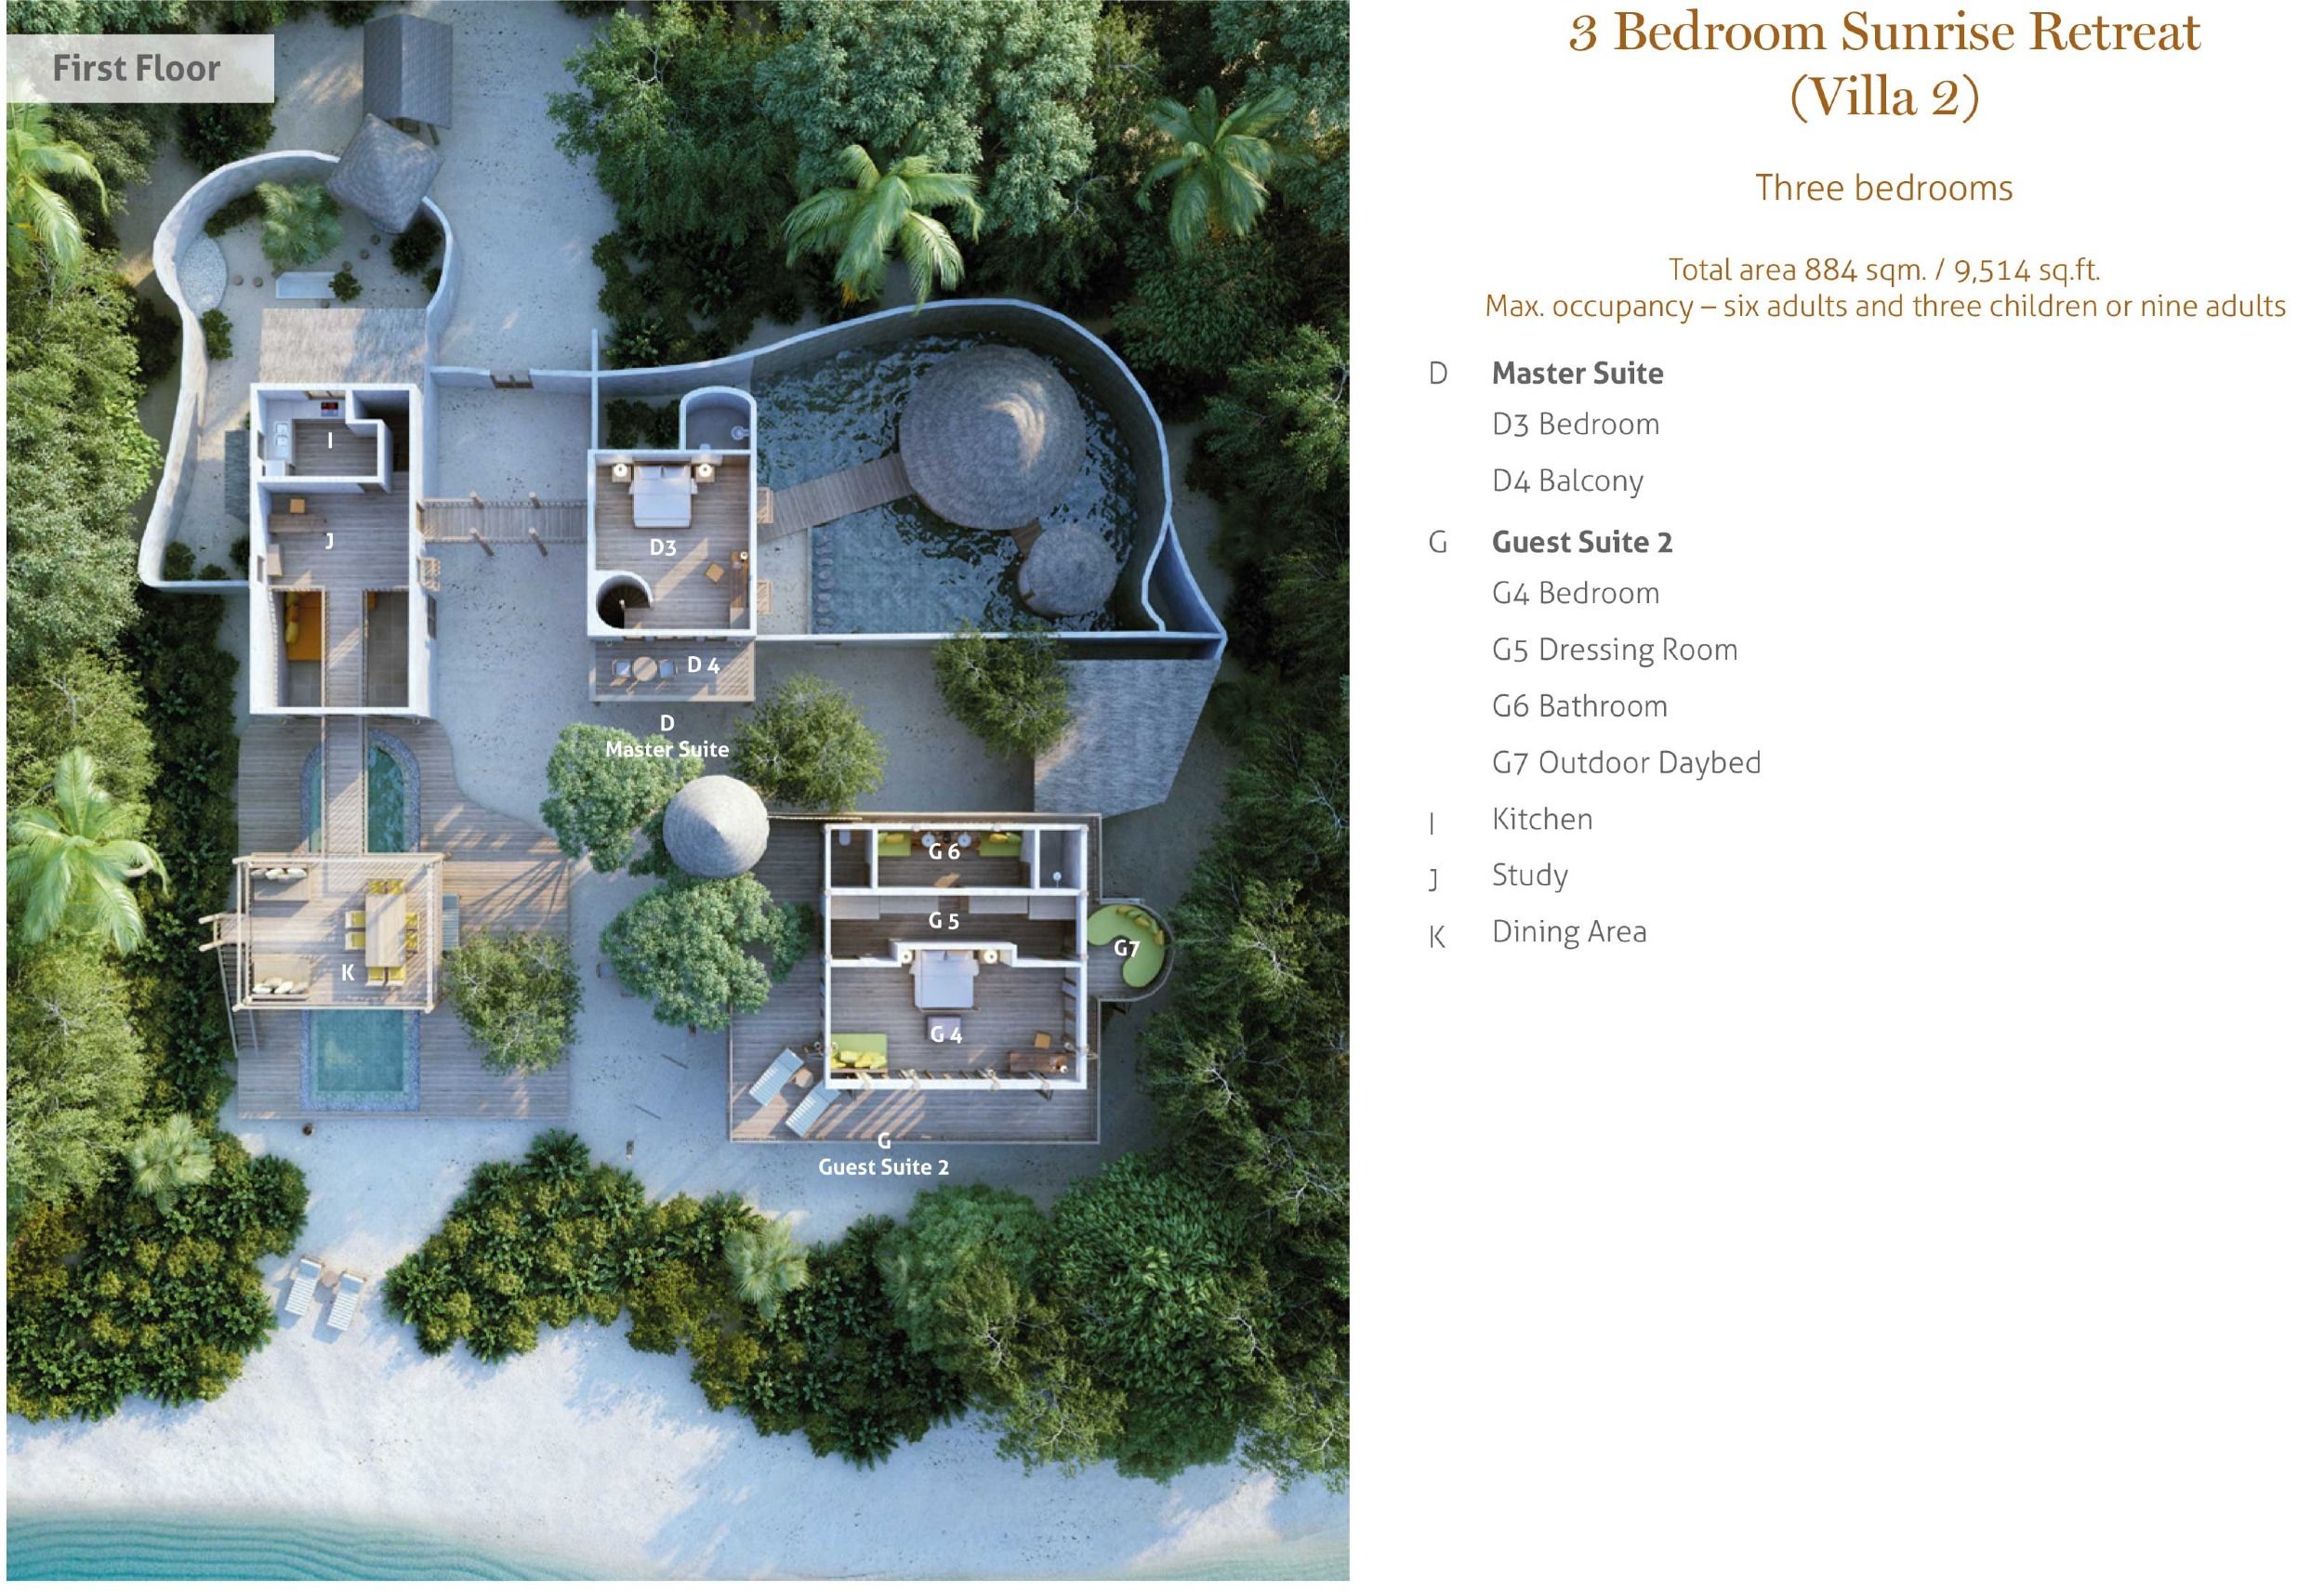 Villa 02 - Sunrise Retreat with Pool - Three Bedroom